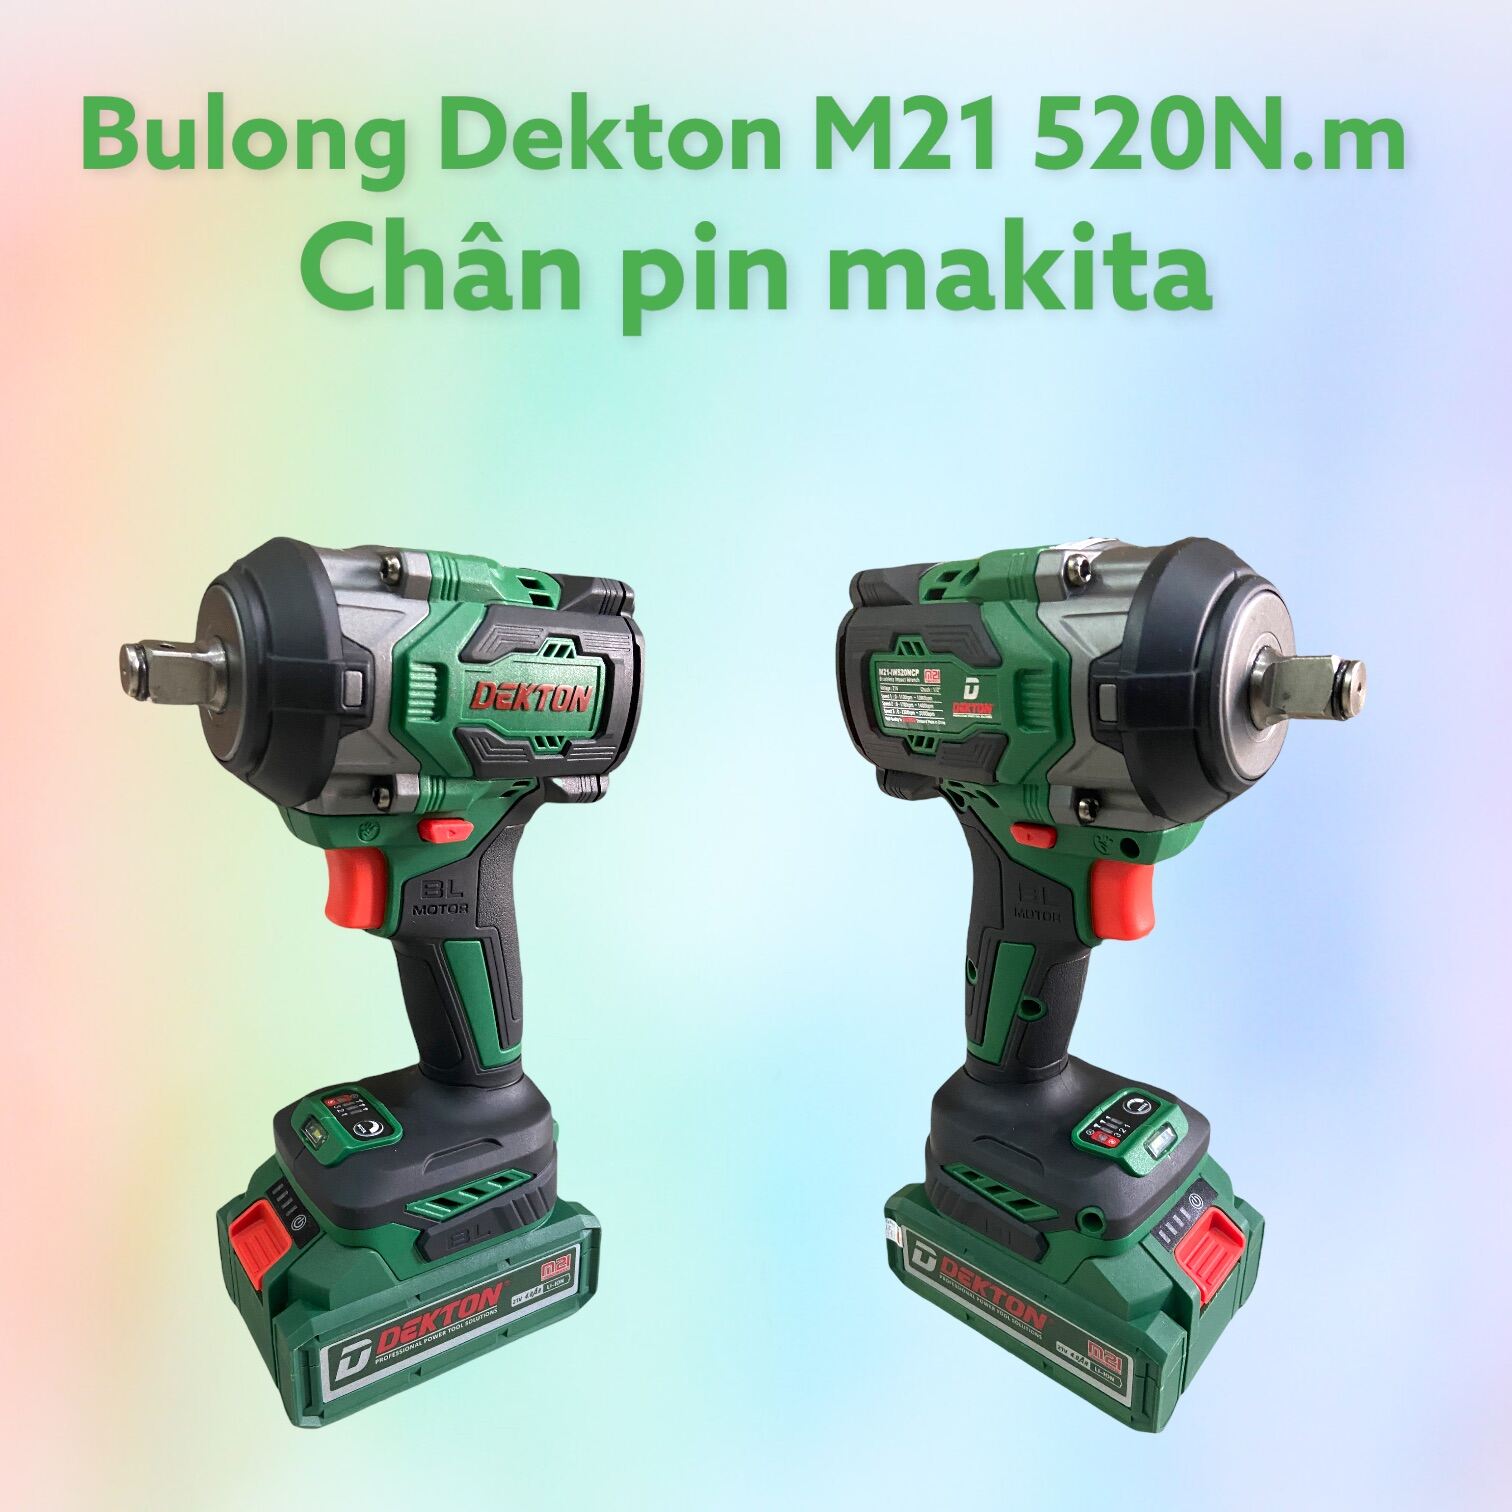 Máy Bulong pin 520N.m dekton M21 chân makita thông dụng